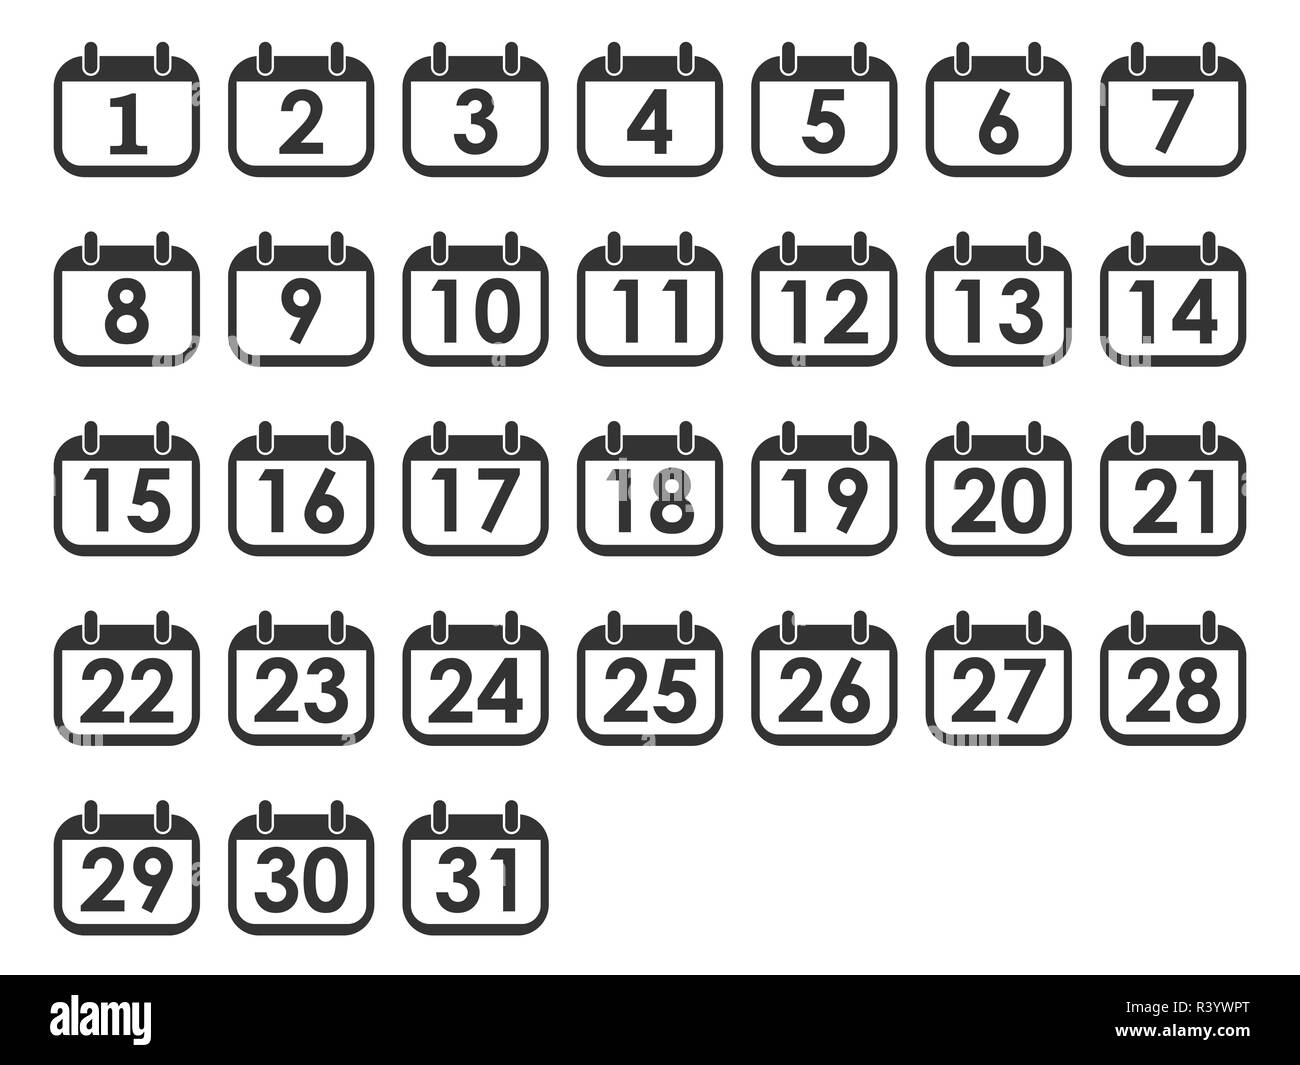 Vector illustration, flat design. Calendar day icon set, number on